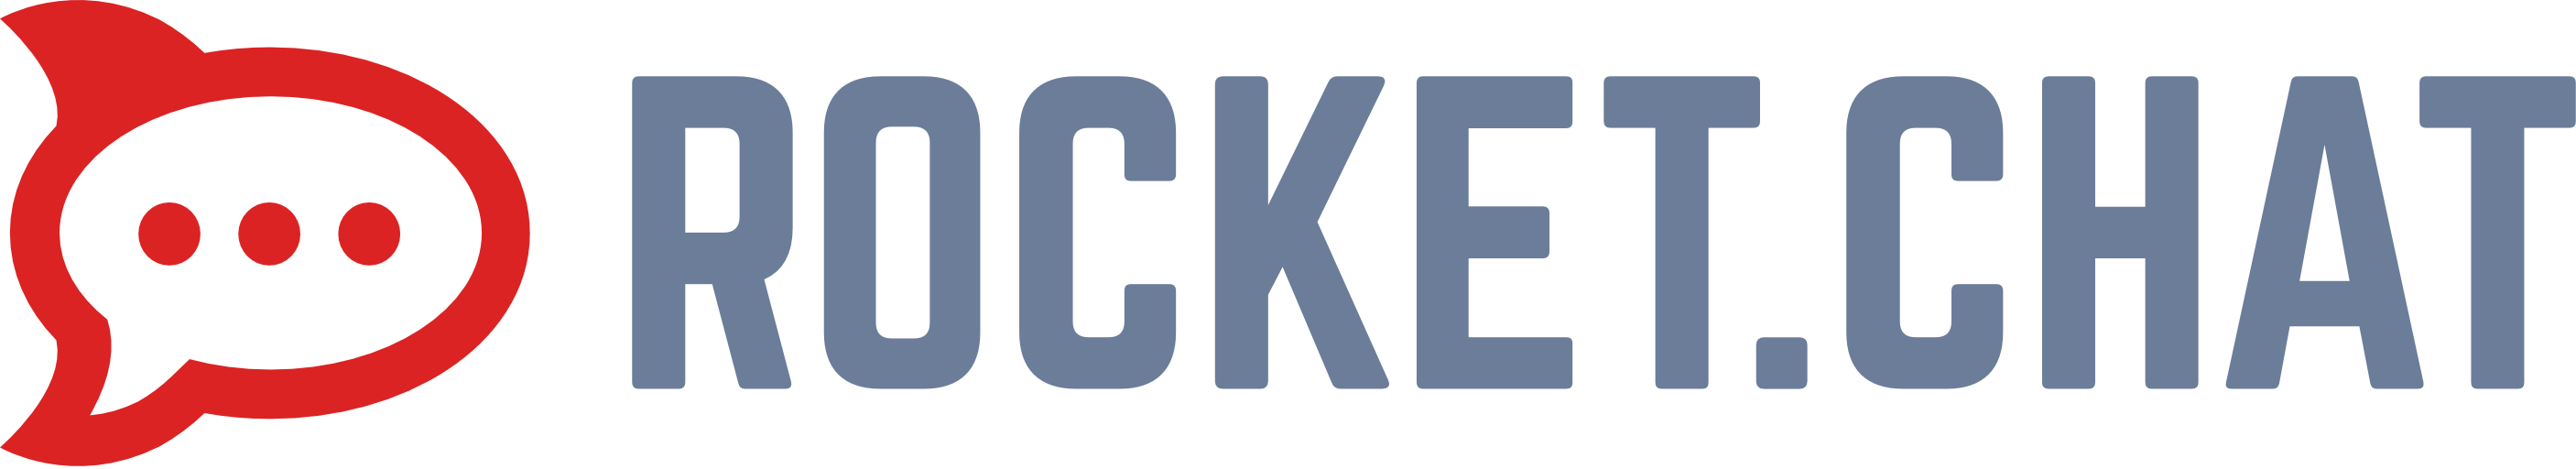 rocketchat server